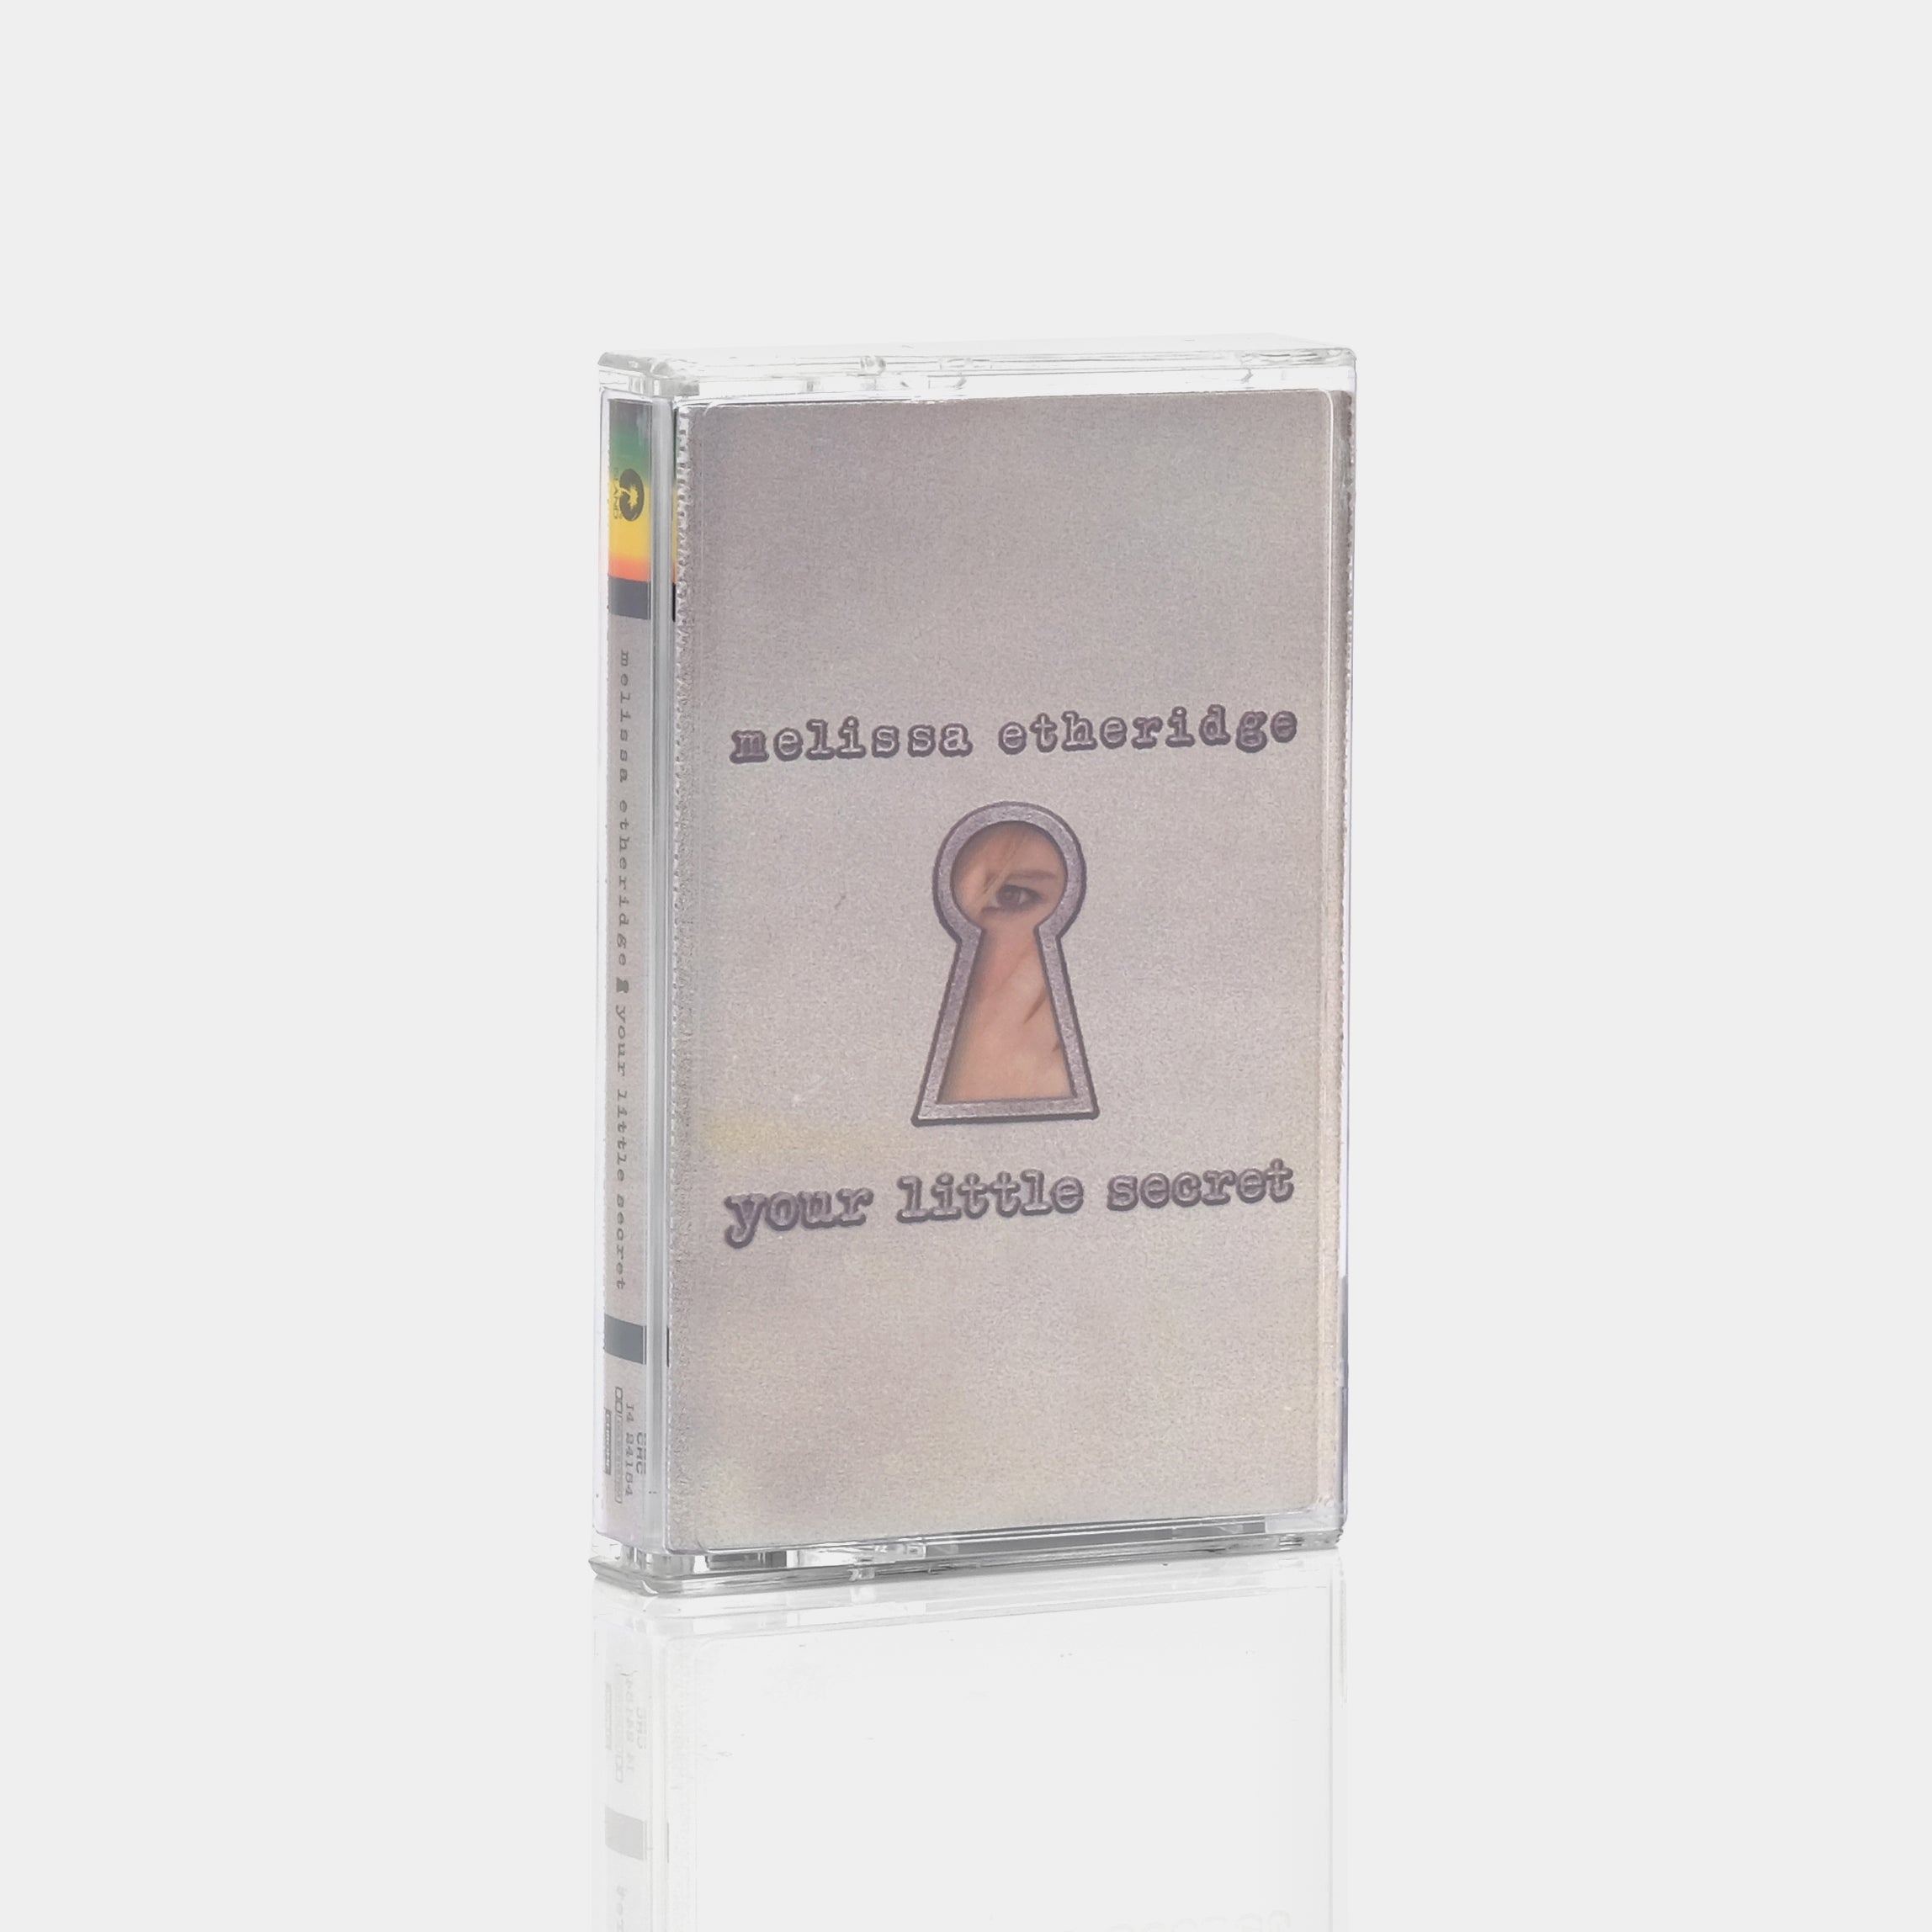 Melissa Etheridge - Your Little Secret Cassette Tape